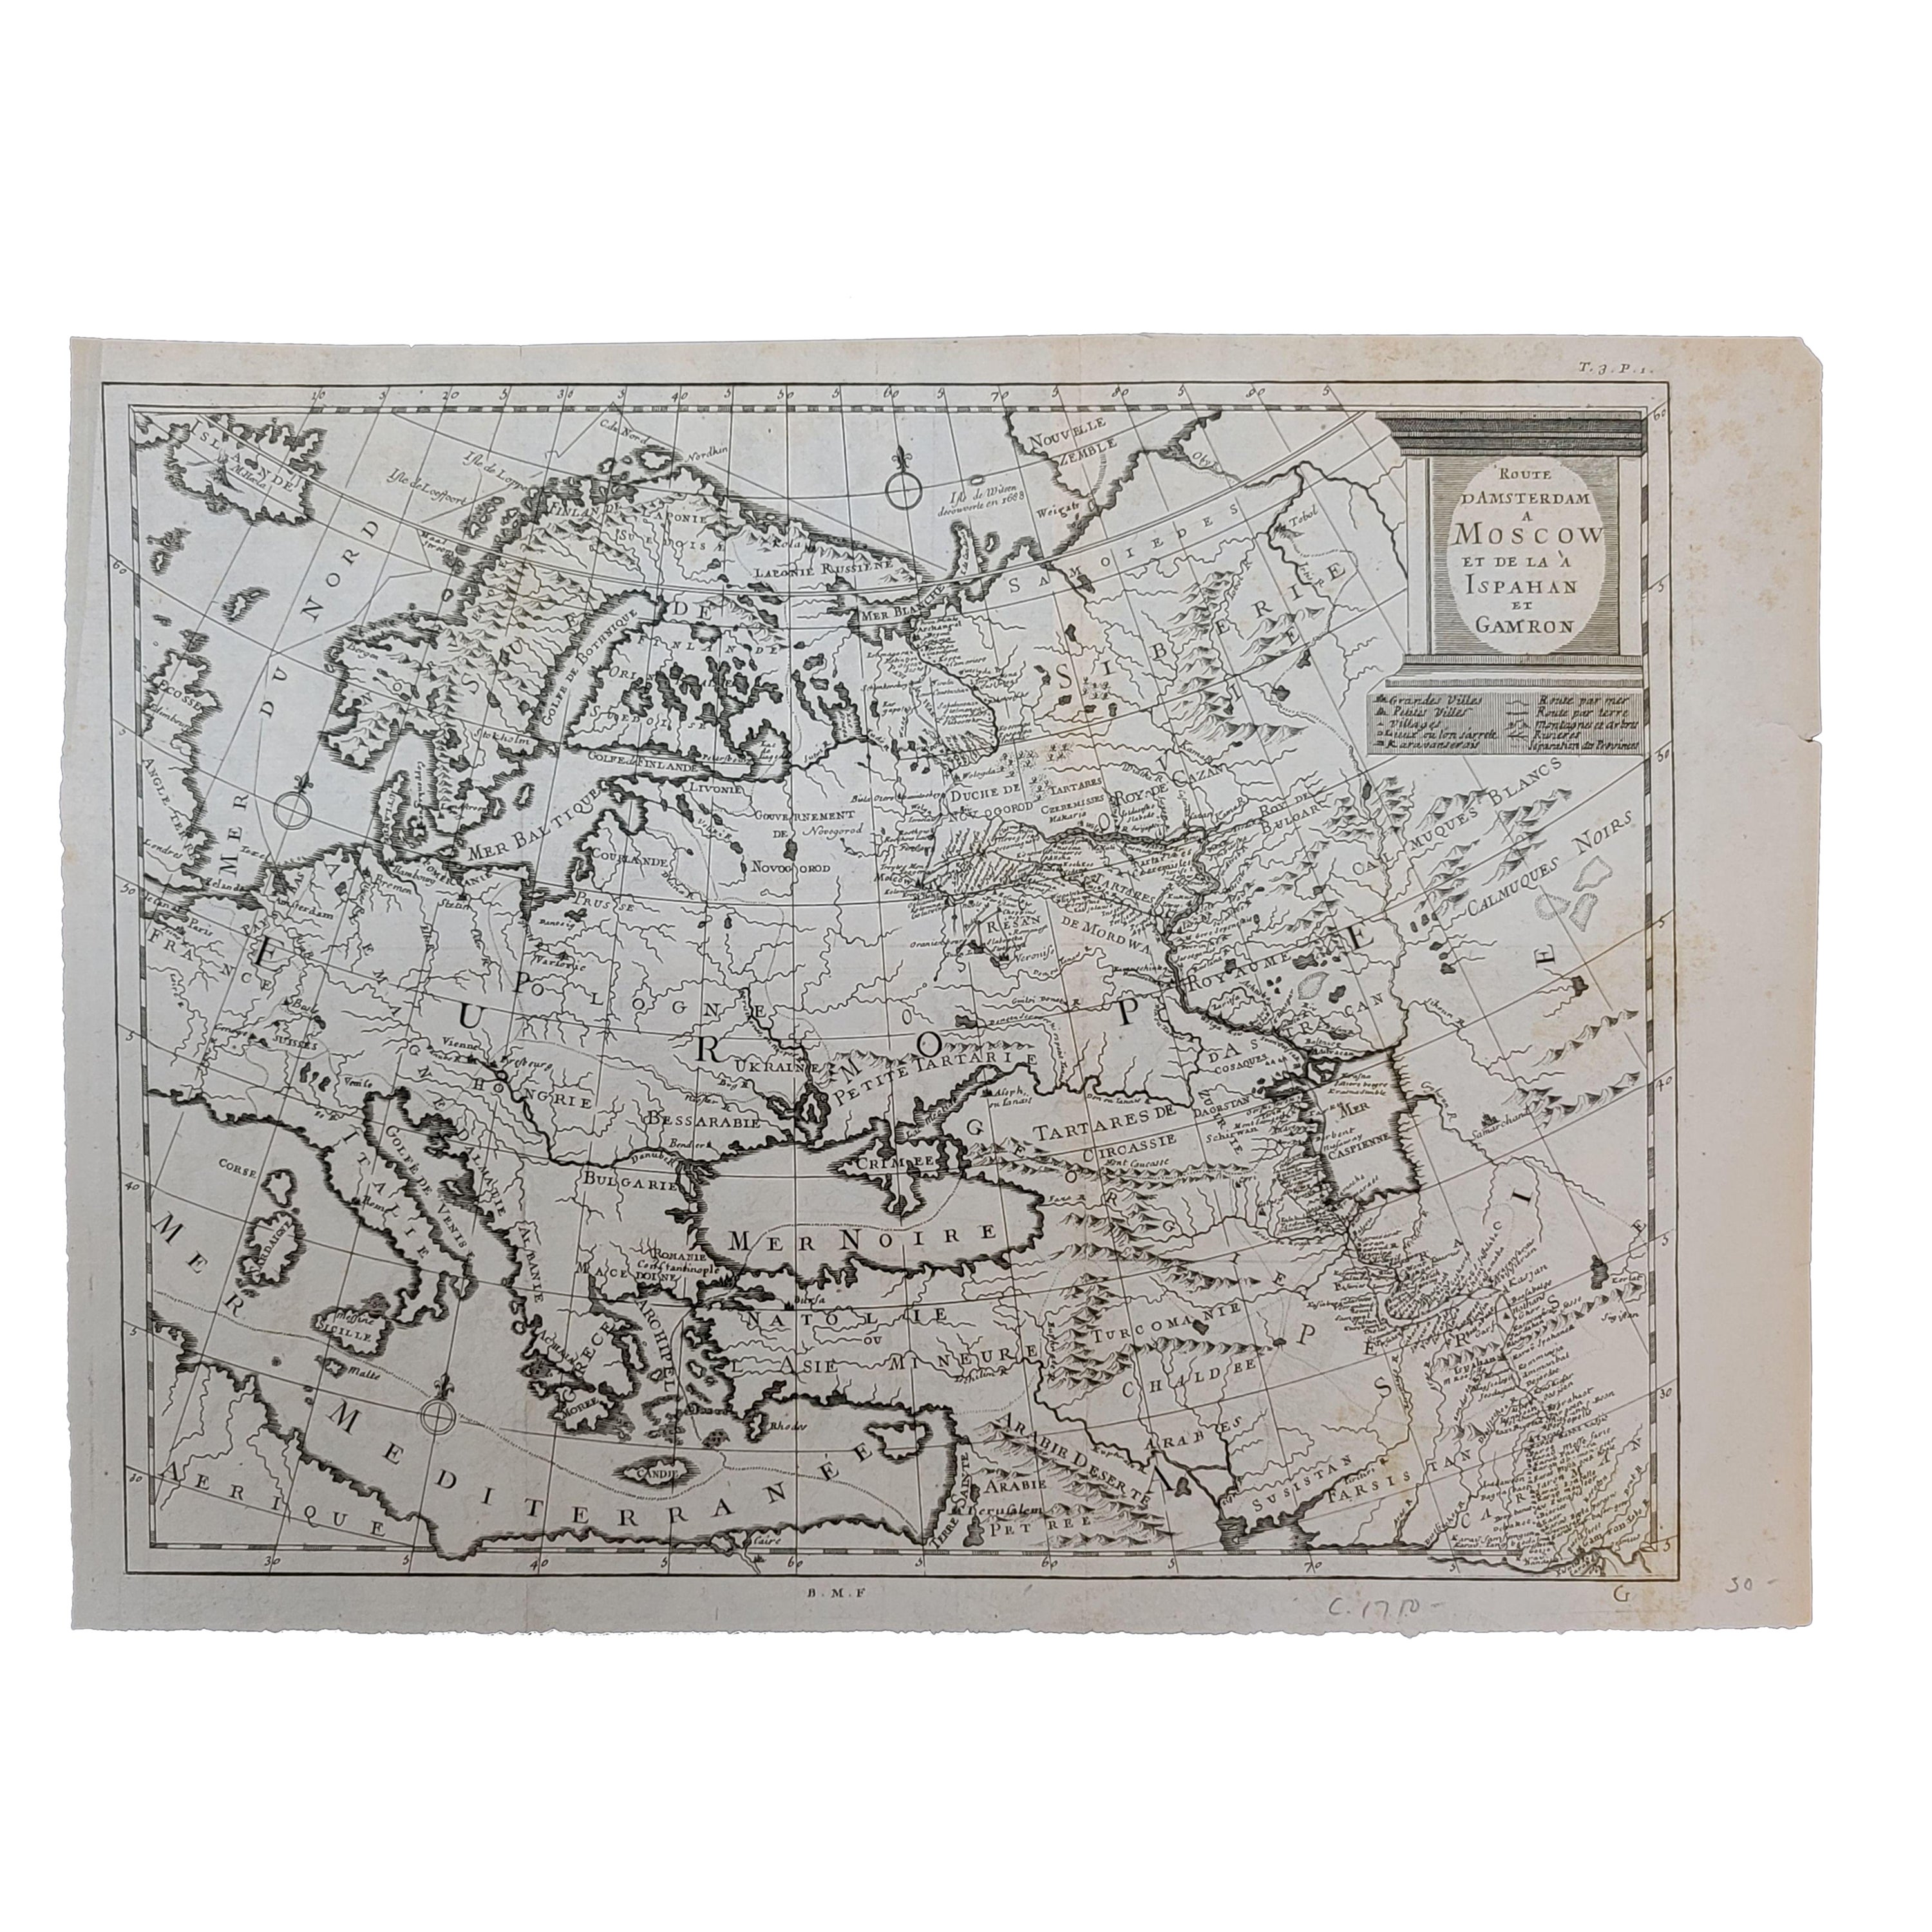 1718 Ides & Witsen Map "Route D'amsterdam a Moscow Et De La Ispahan Et Gamron